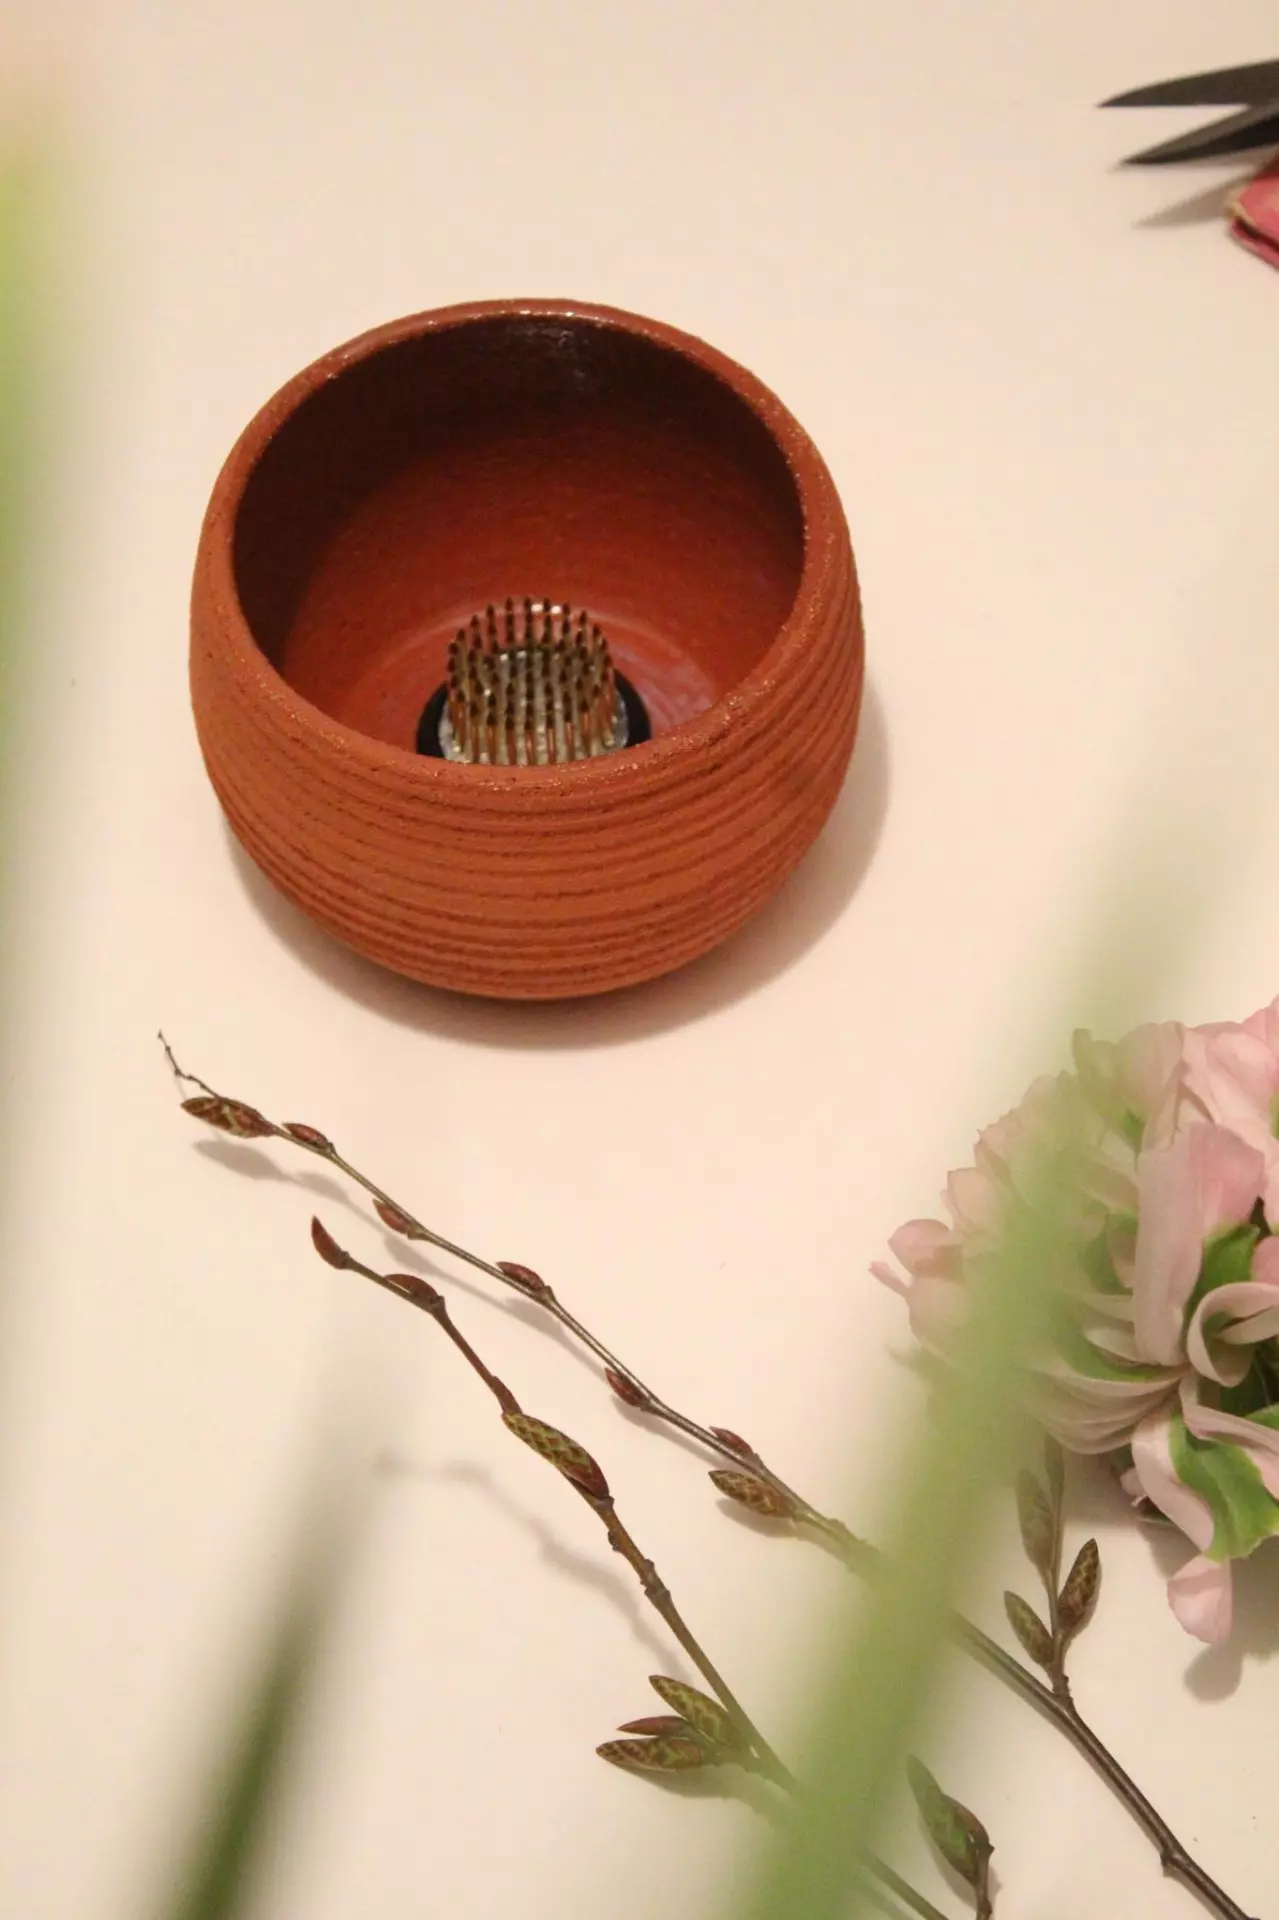 Ročno izdelana vazica RojPottery X Cvetilnik z ježkom za oblikovanje cvetja